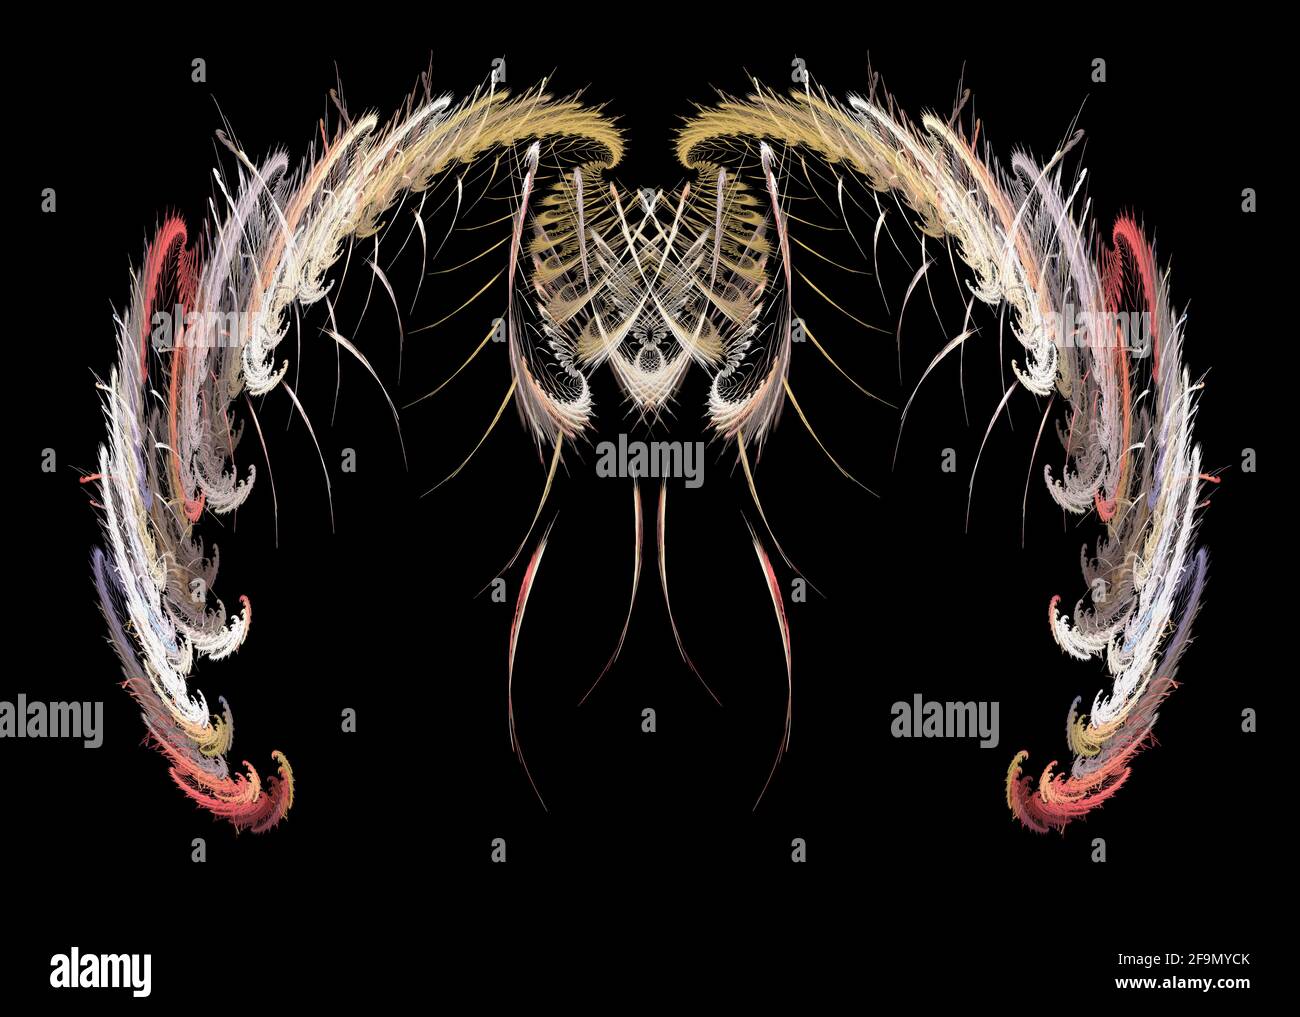 Fraktales Flammenbild, ähnelt einem Fantasy Insektenwesen Symmetrie abstrakte digitale Kunst Stockfoto